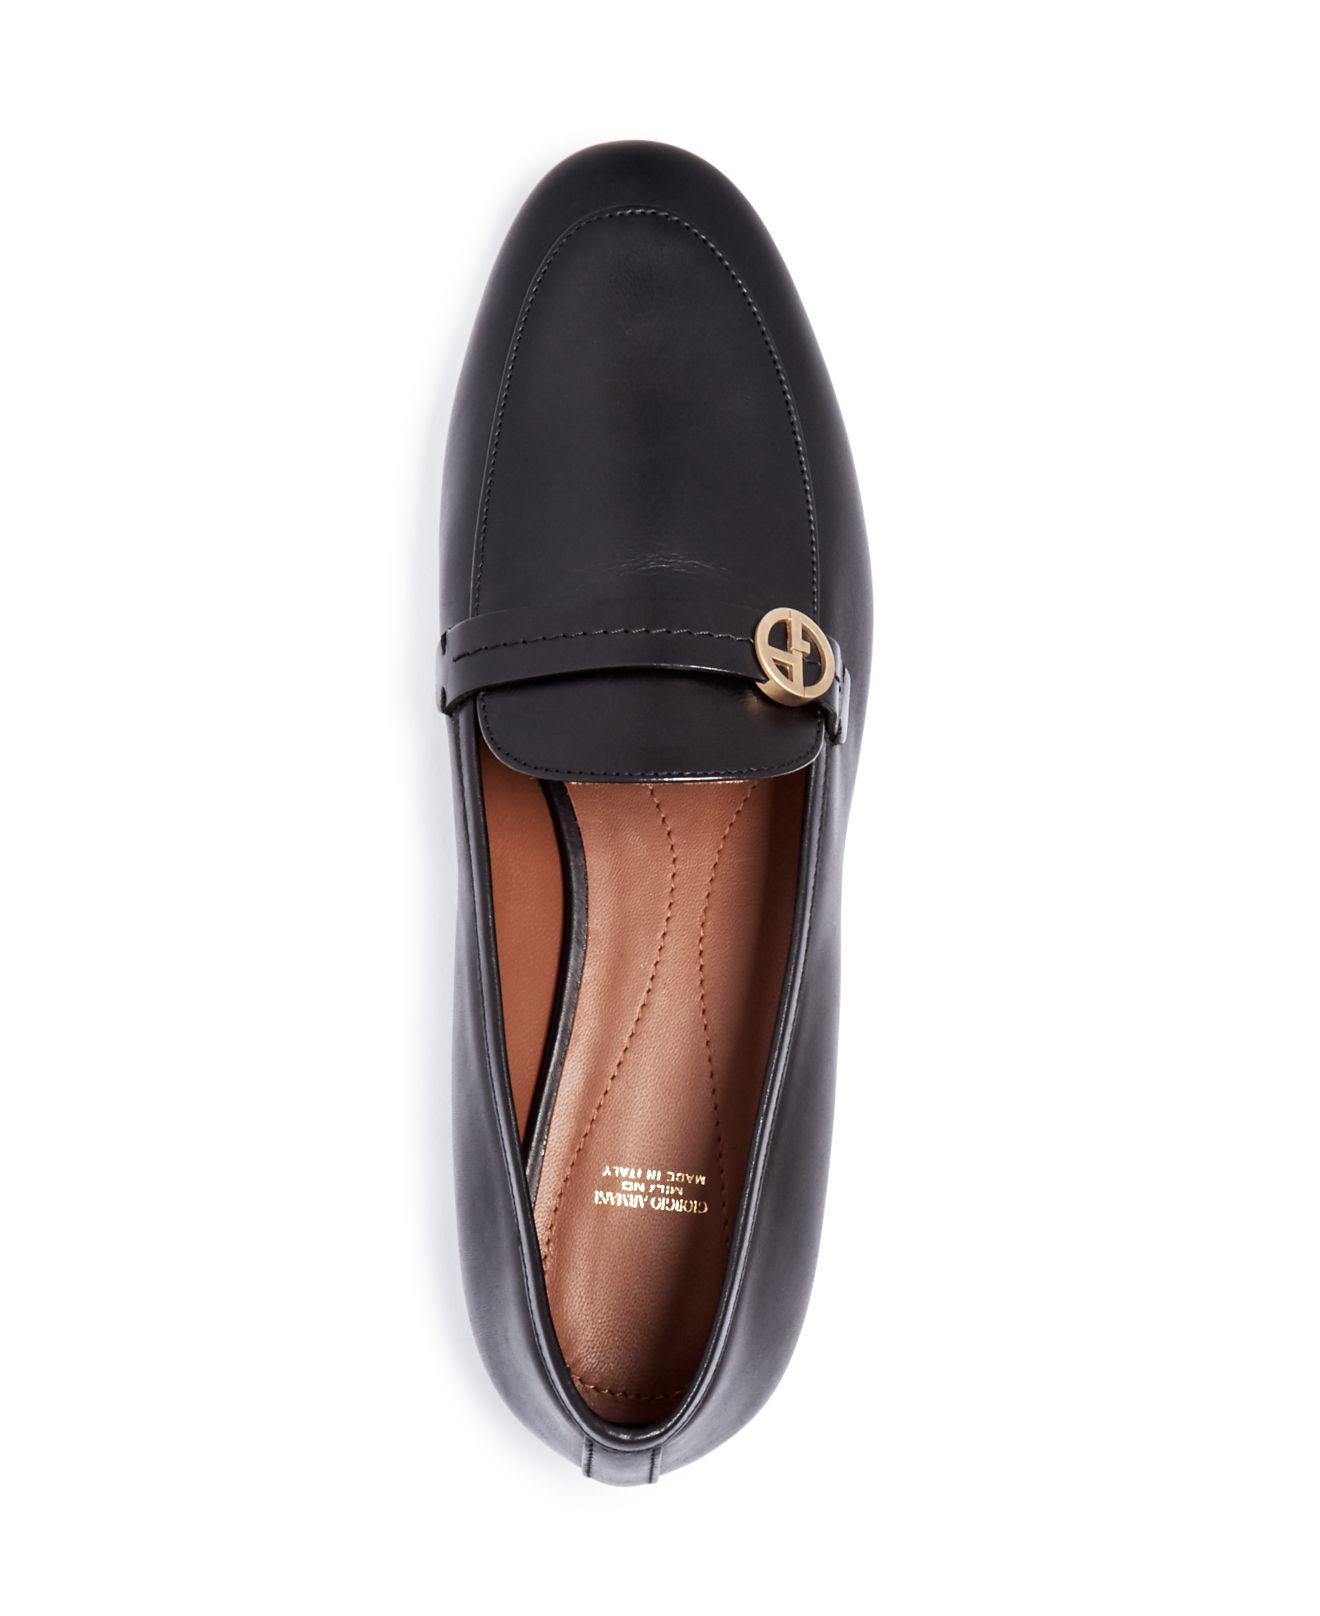 Lyst - Giorgio Armani Women's Vitello Leather Loafers in Black